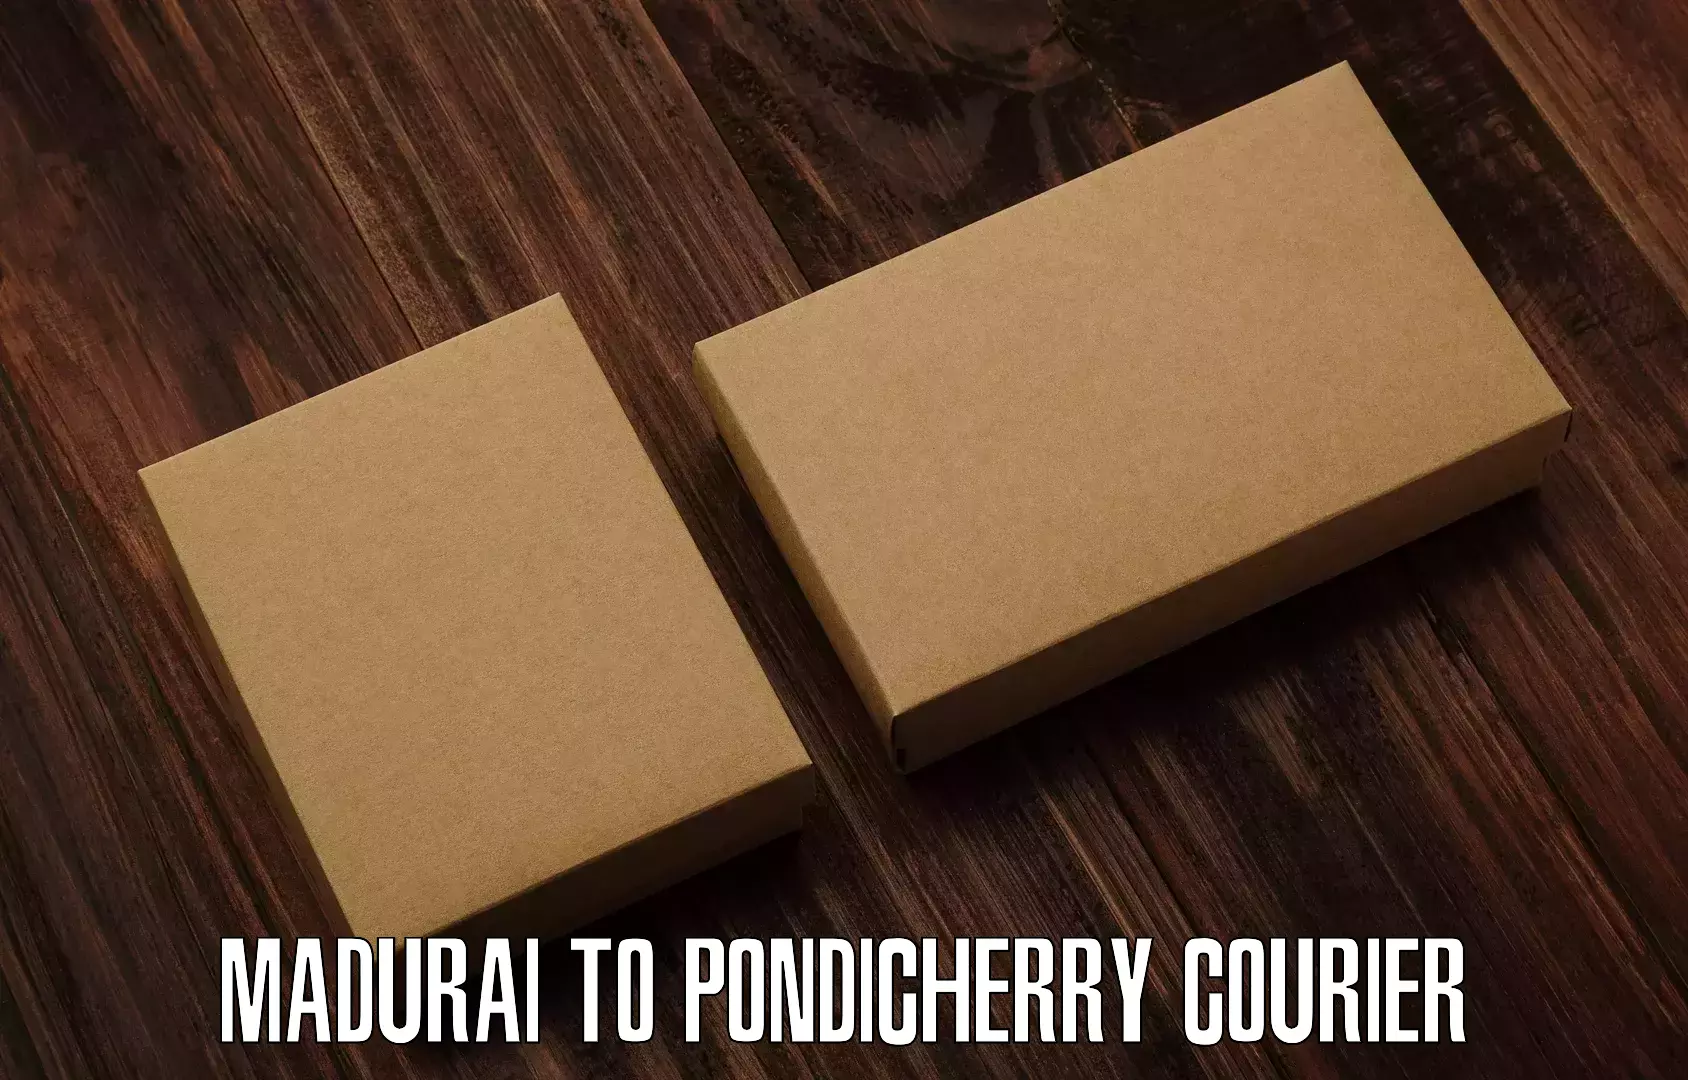 Urgent courier needs Madurai to Pondicherry